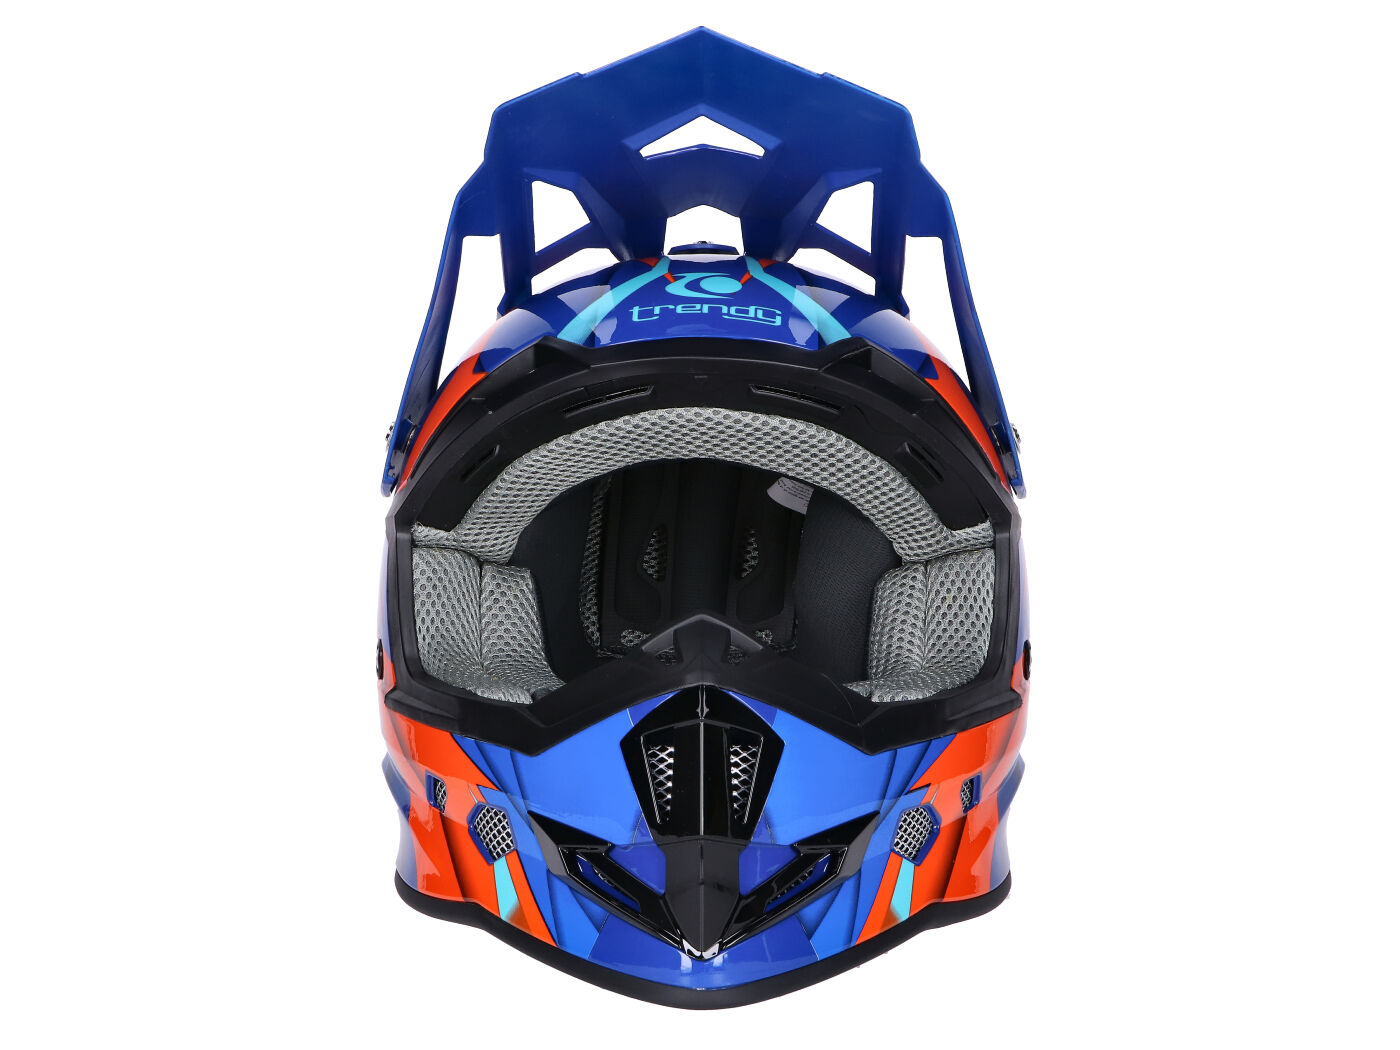 moeilijk verzameling Gedetailleerd Shop Dirt Bike & Motocross Helmets Online - Helmet Motocross Trendy T-902  Dreamstar blue orange - different sizes | Scooter Parts | Racing Planet USA  